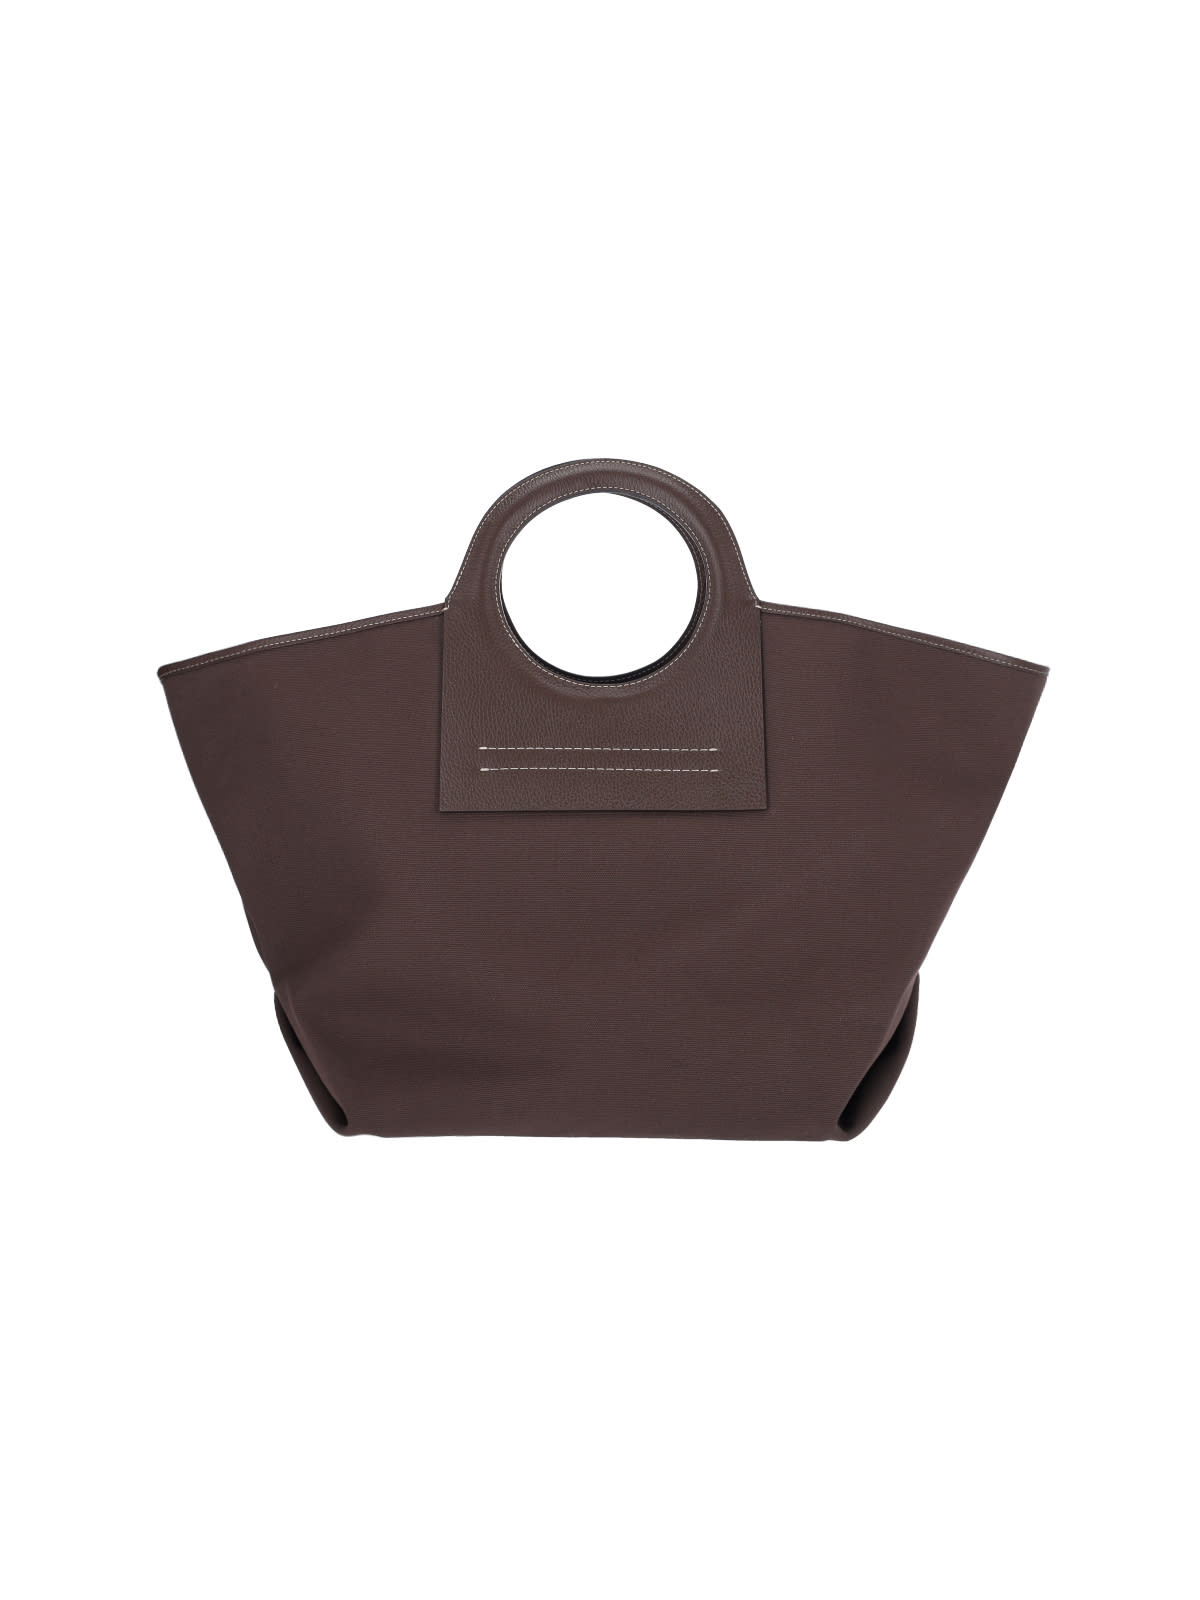 HEREU Alqueria Cutout Suede Top-Handle Bag